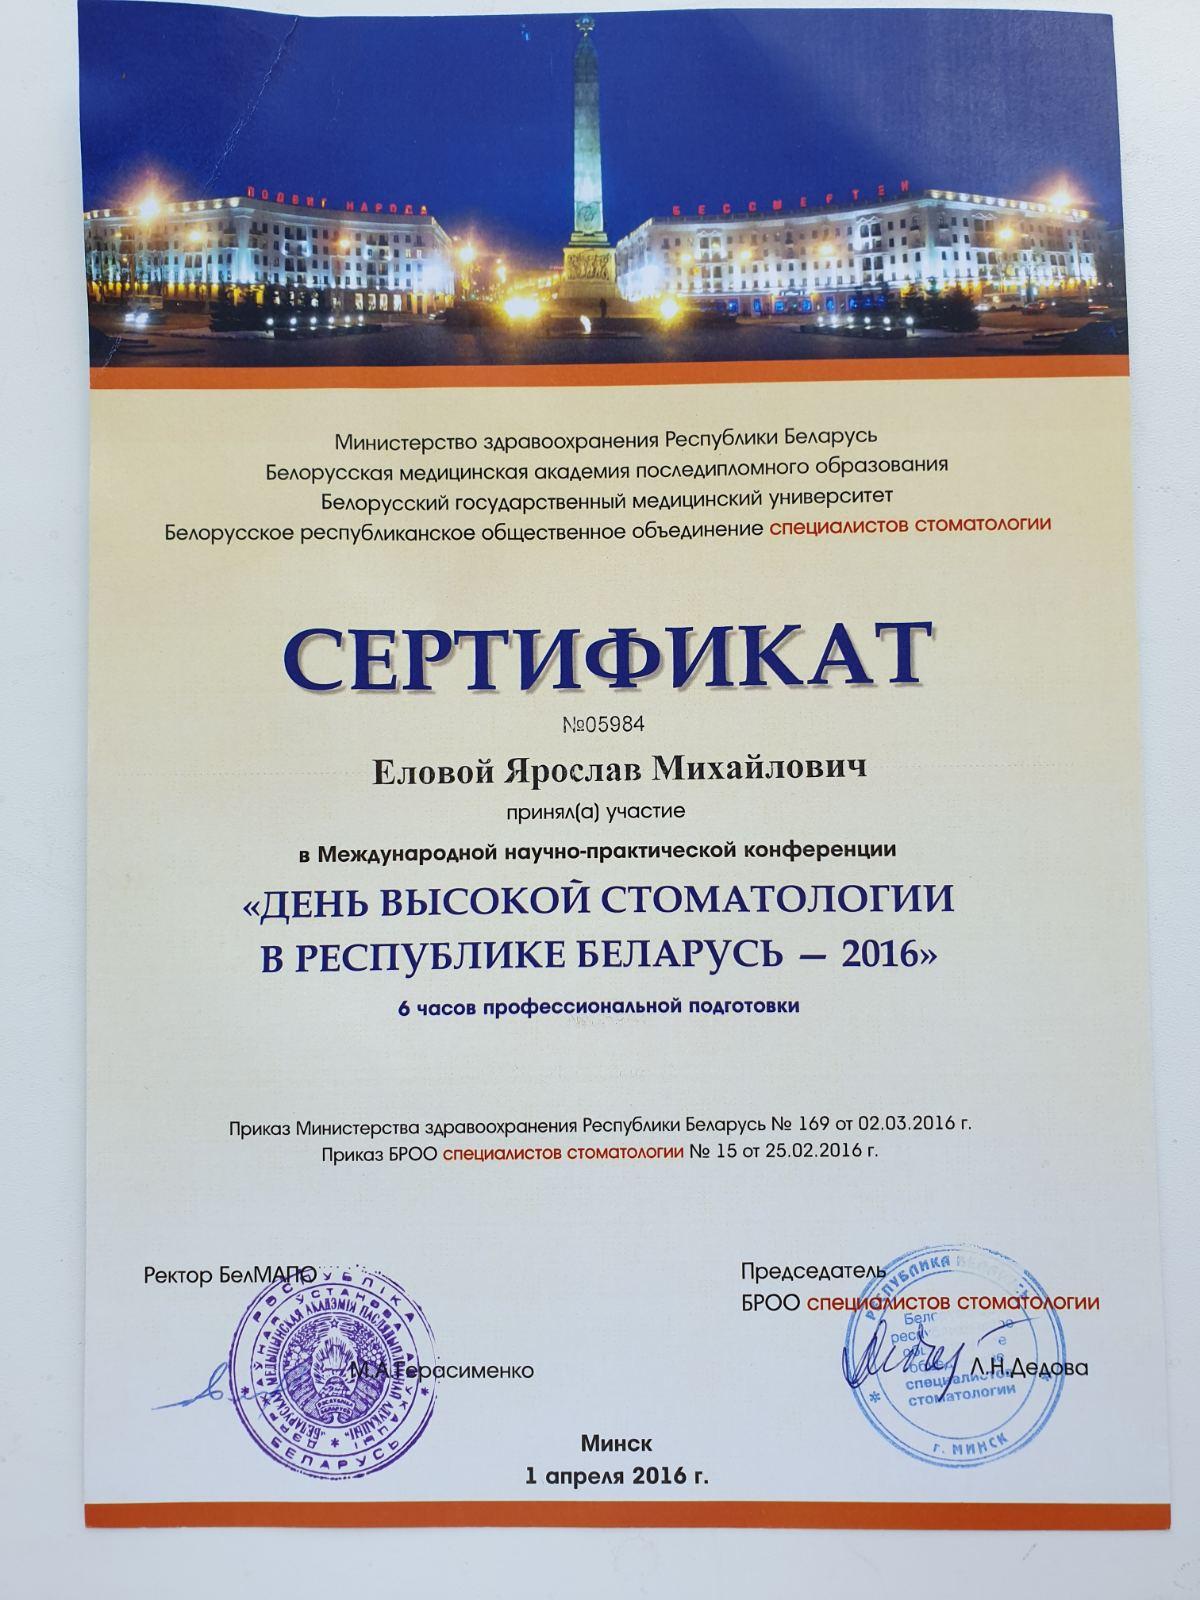 Сертификат выданный Еловому Ярославу Михайловичу о принятии участия в Международном научно-практической конференции - День высокой стоматологии в Республике Беларусь - 2016